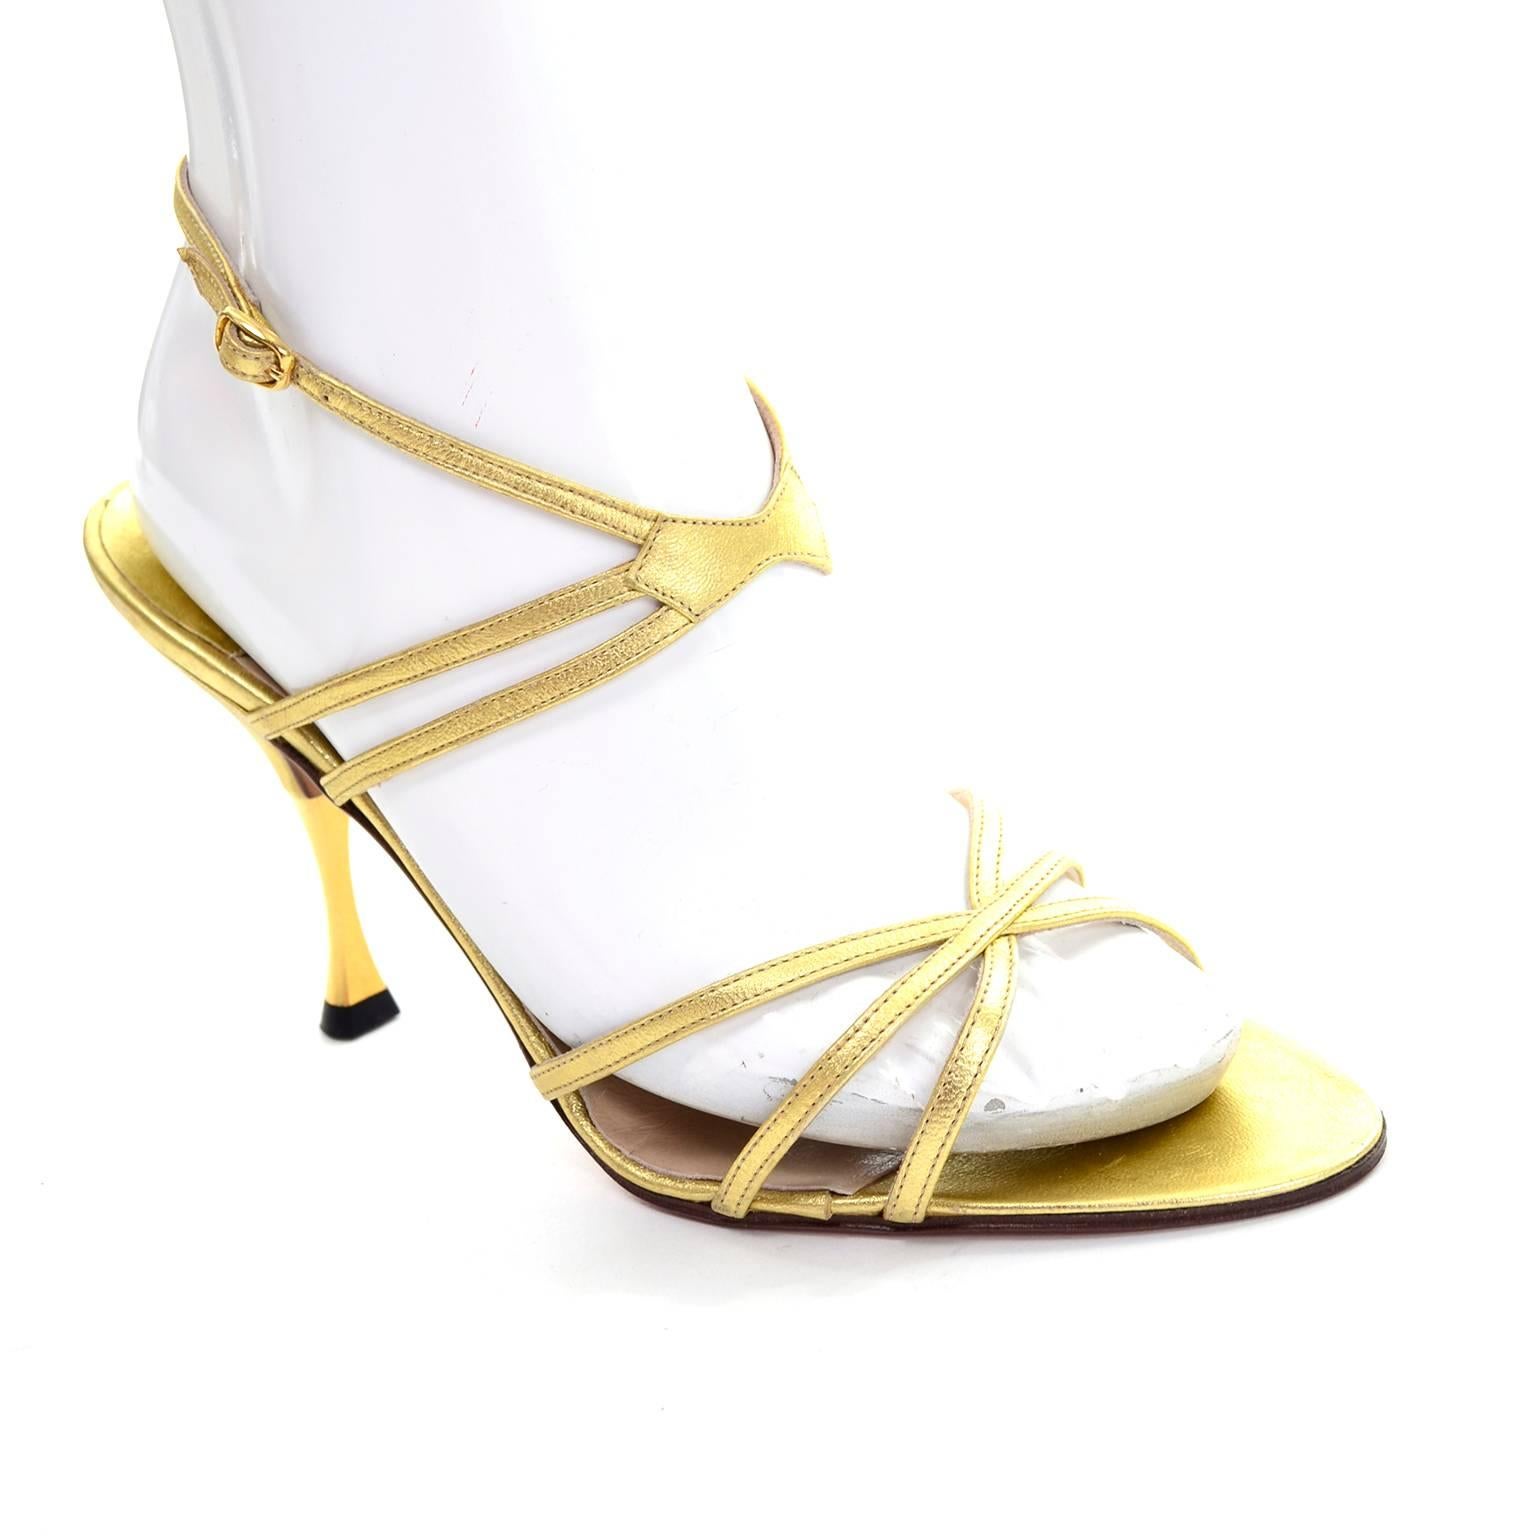 Diese Vintage-Schuhe von Manolo Blahnik stammen aus einem Nachlass von hochwertiger Designerkleidung und Accessoires aus den 1980er Jahren. Diese goldenen Metallic-Schuhe sind mit dem Label  Größe 39 und erscheinen ungetragen mit 4